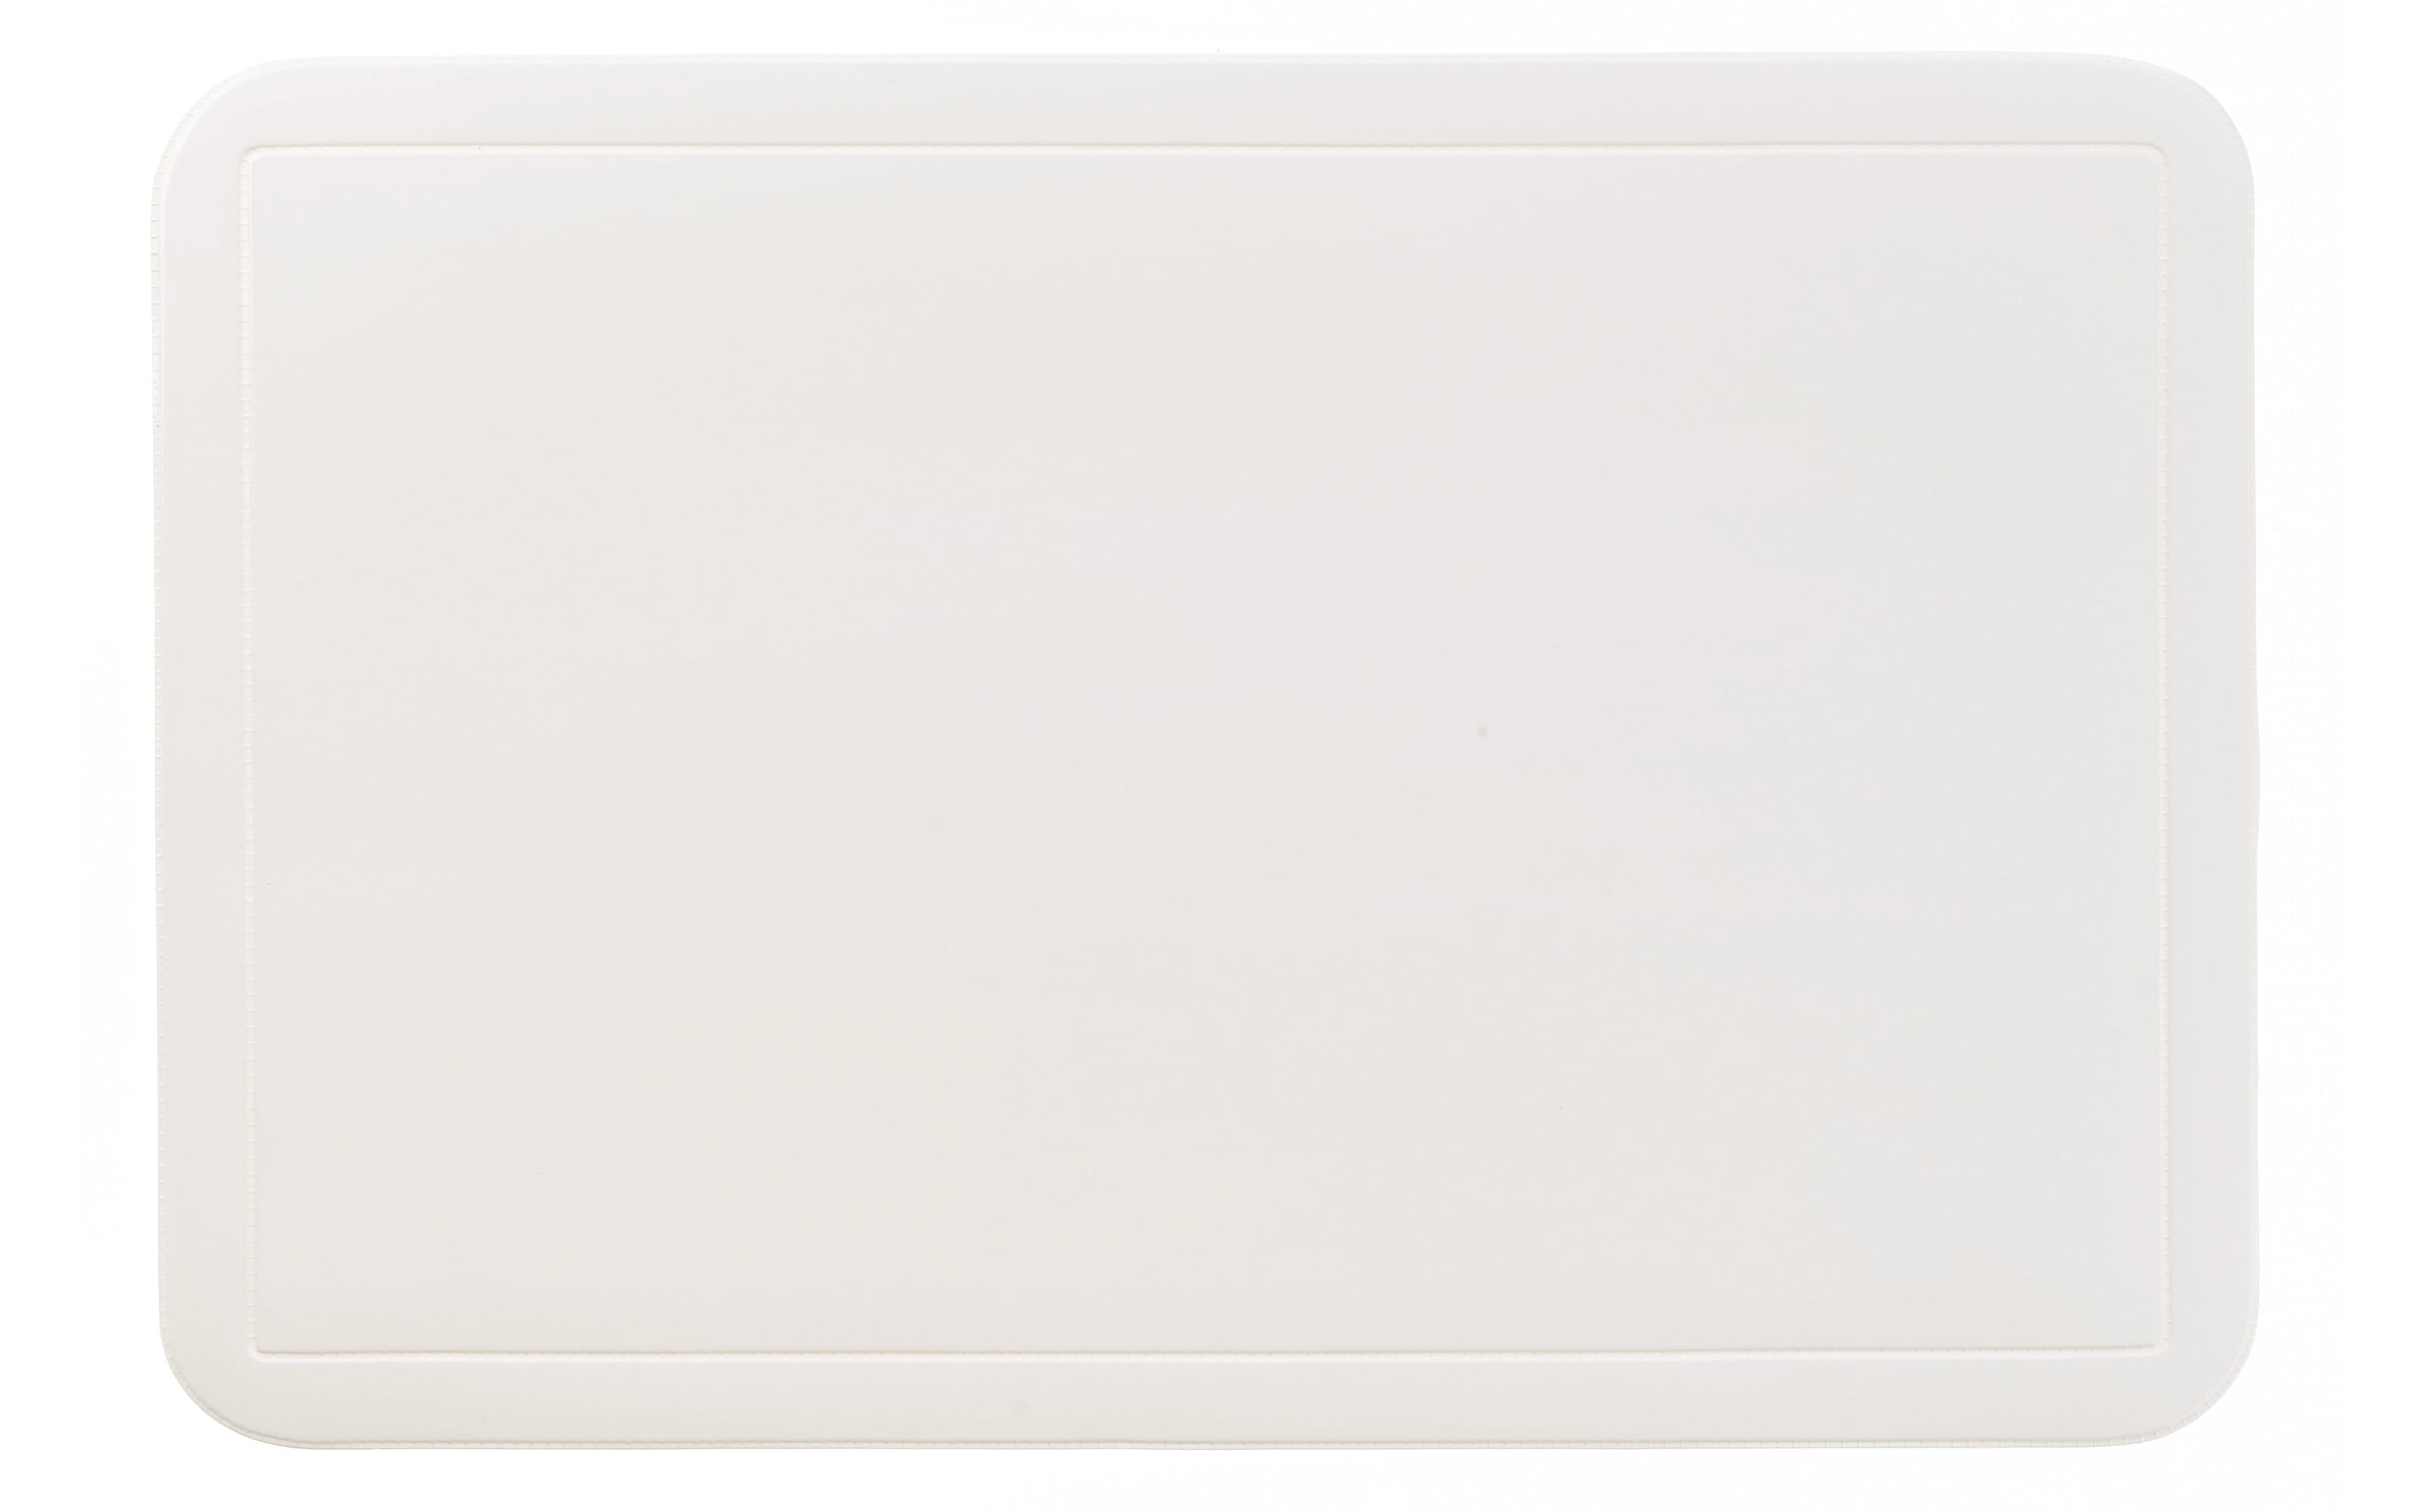 Tischset Uni in weiß, 28.5 x 43.5 cm